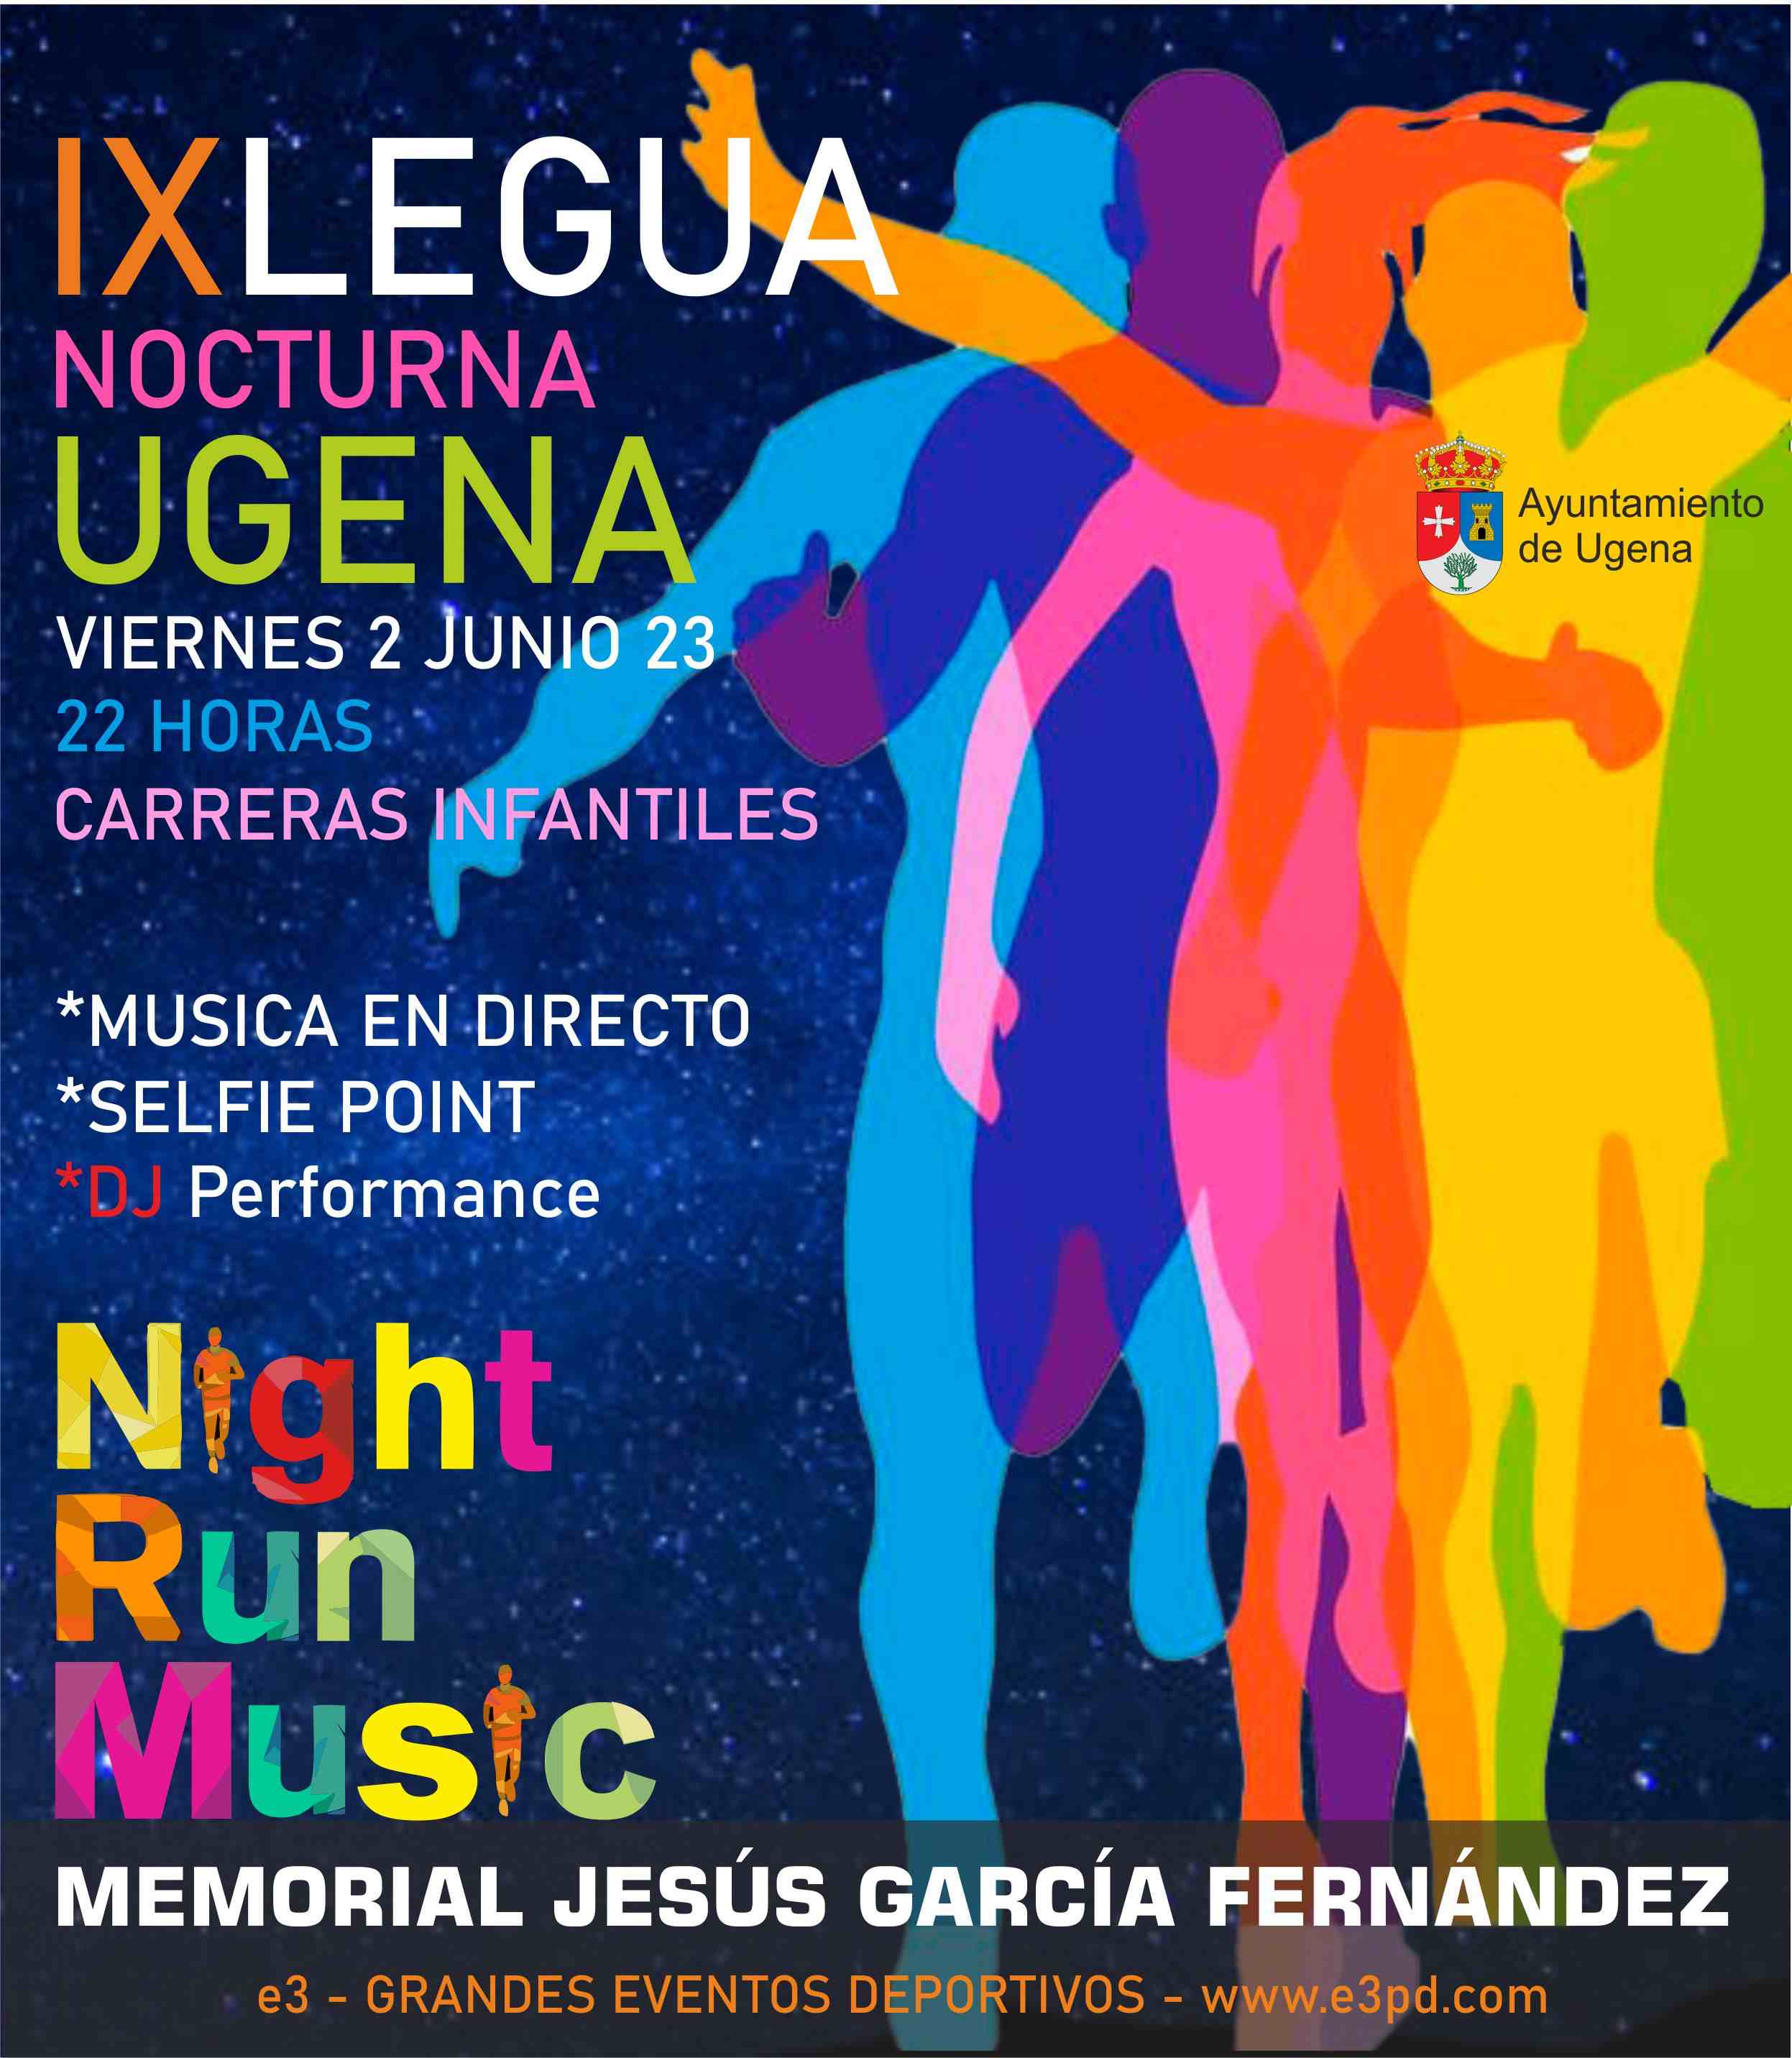 IX LEGUA NOCTURNA DE UGENA - Register